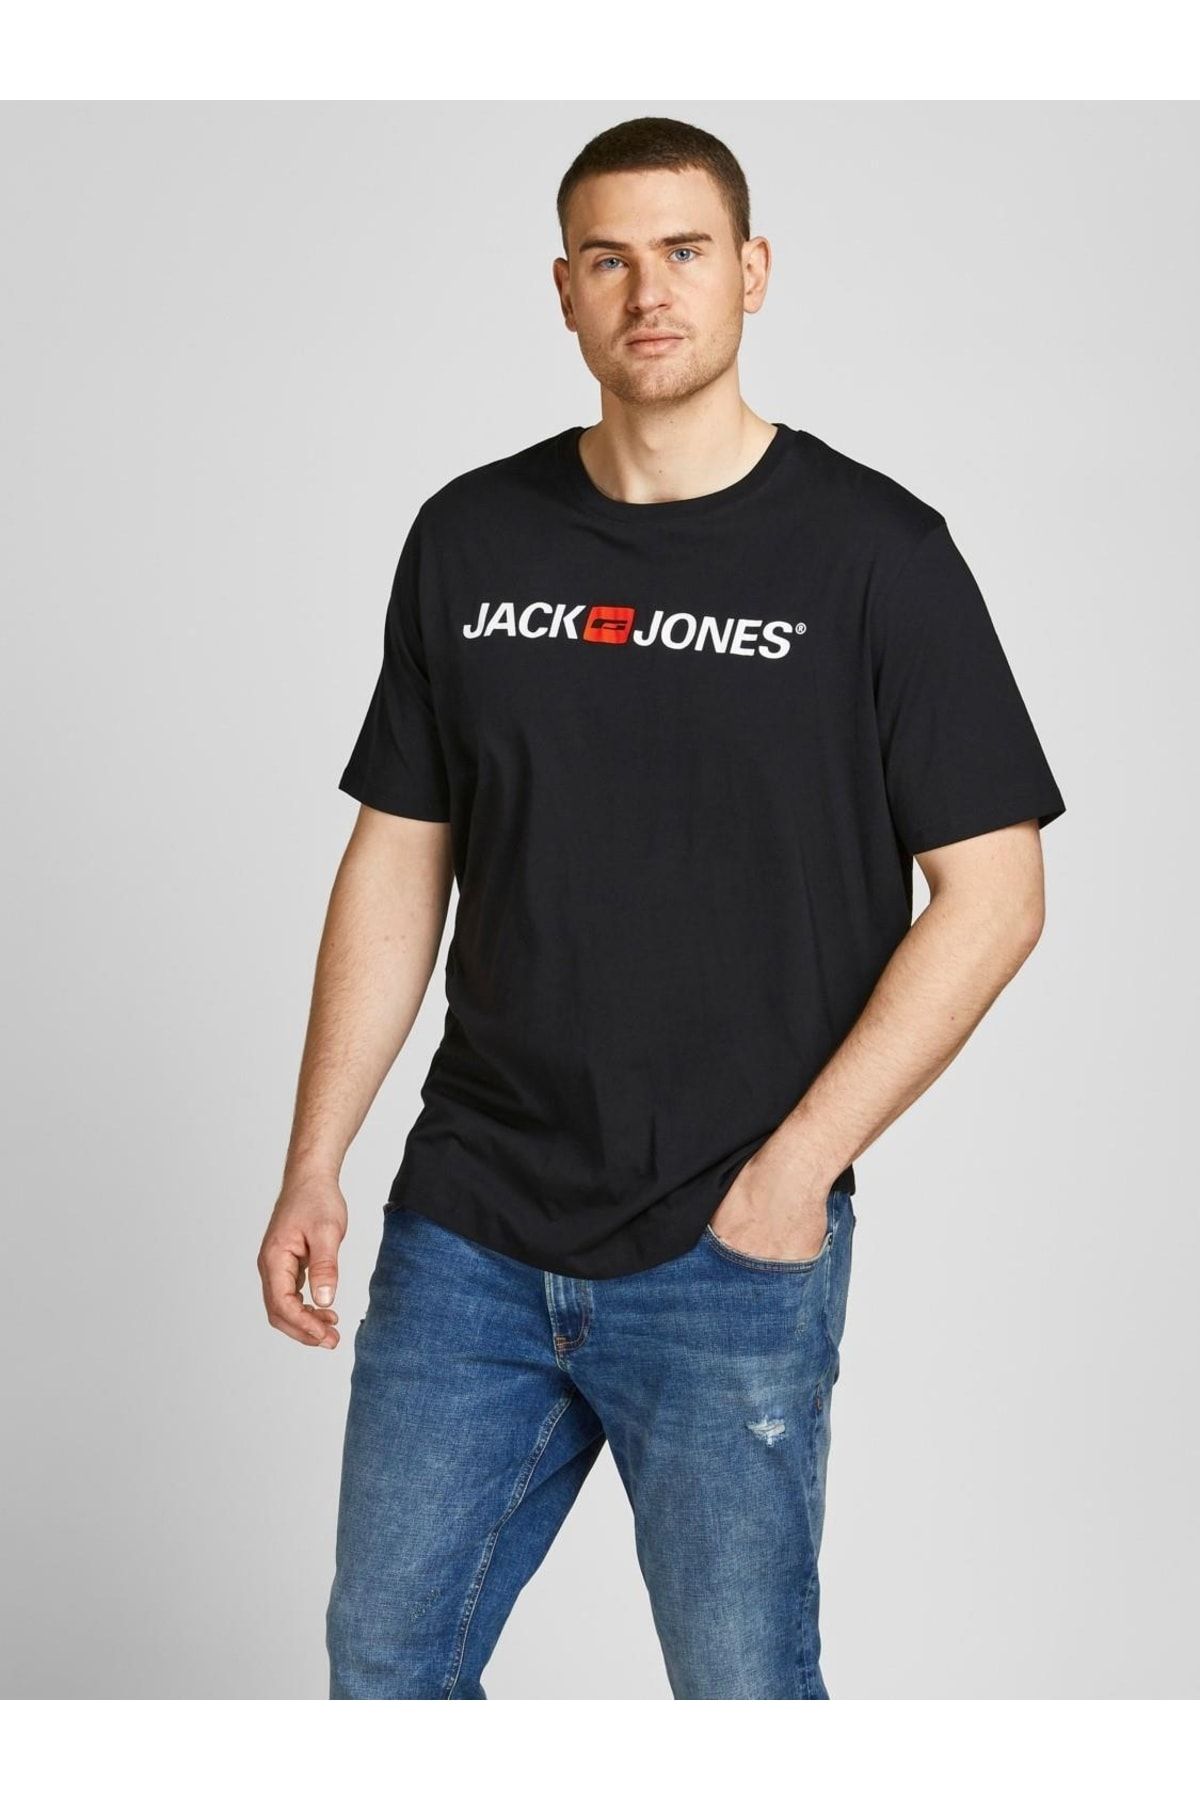 تی شرت مردانه مشکی جک اند جونز Jack & Jones (برند دانمارک)